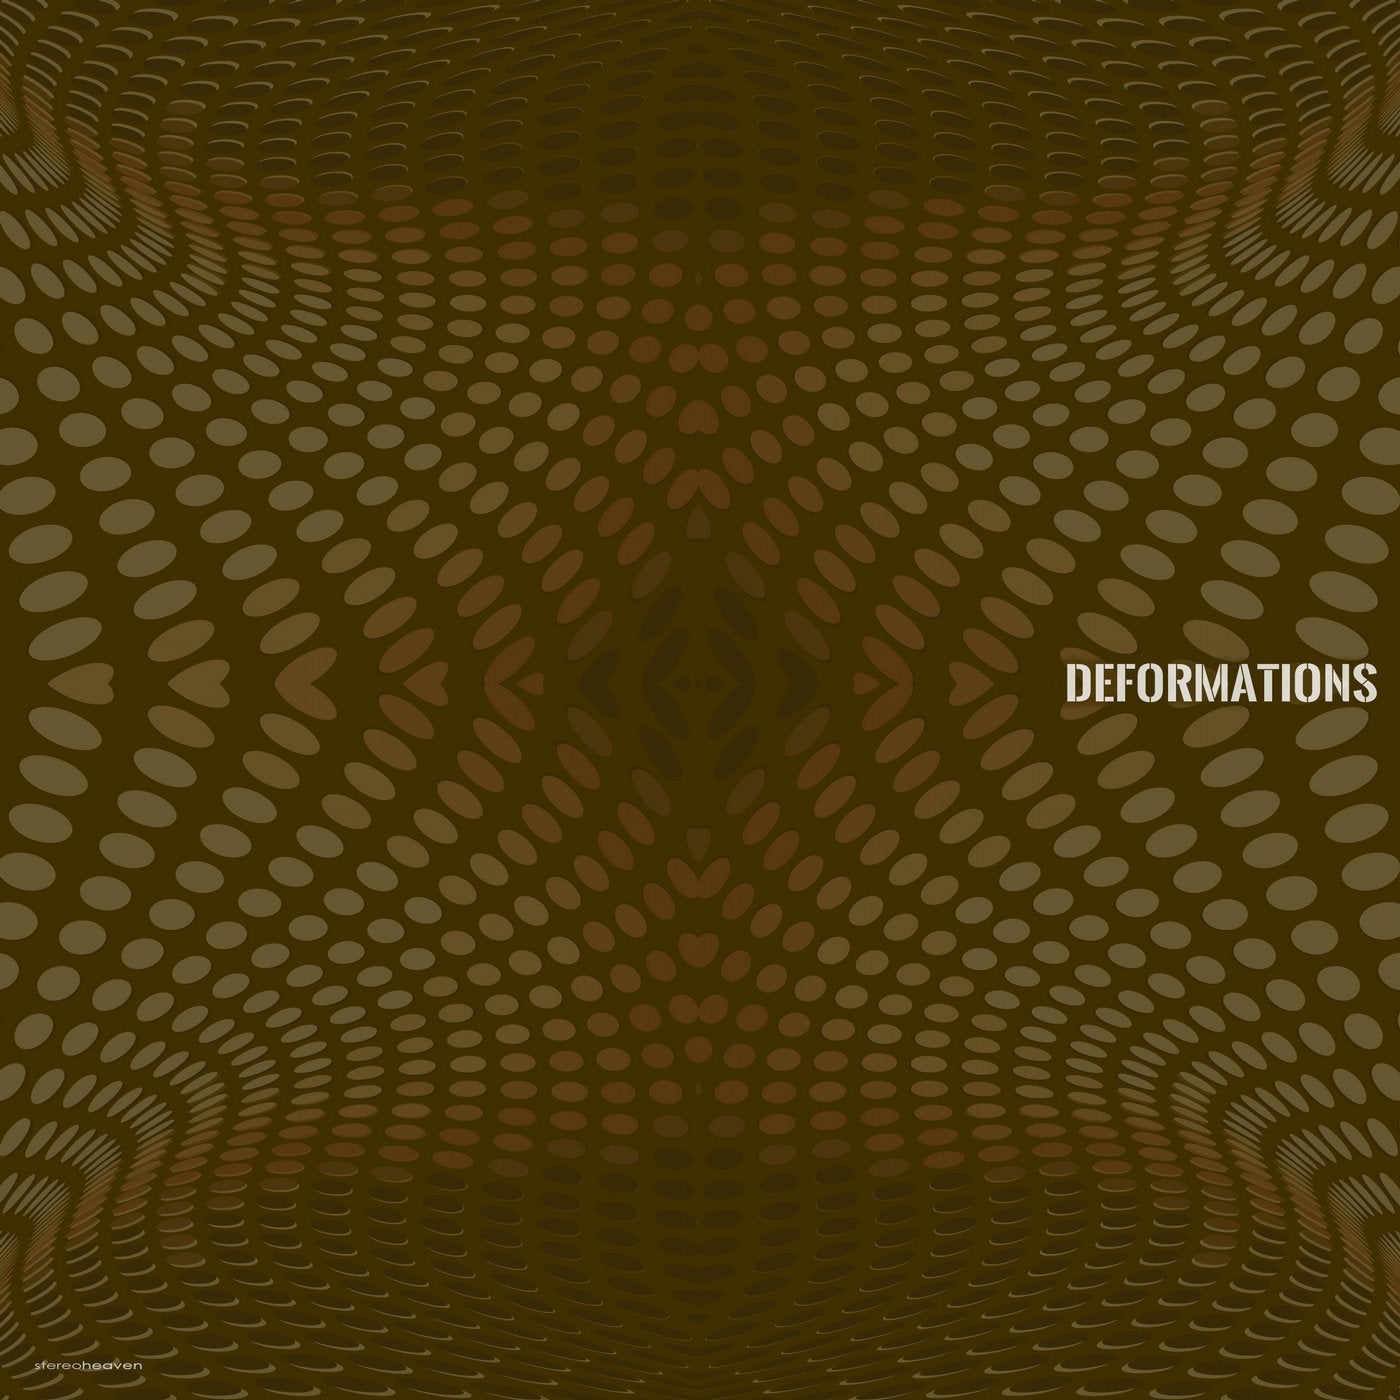 Deformations